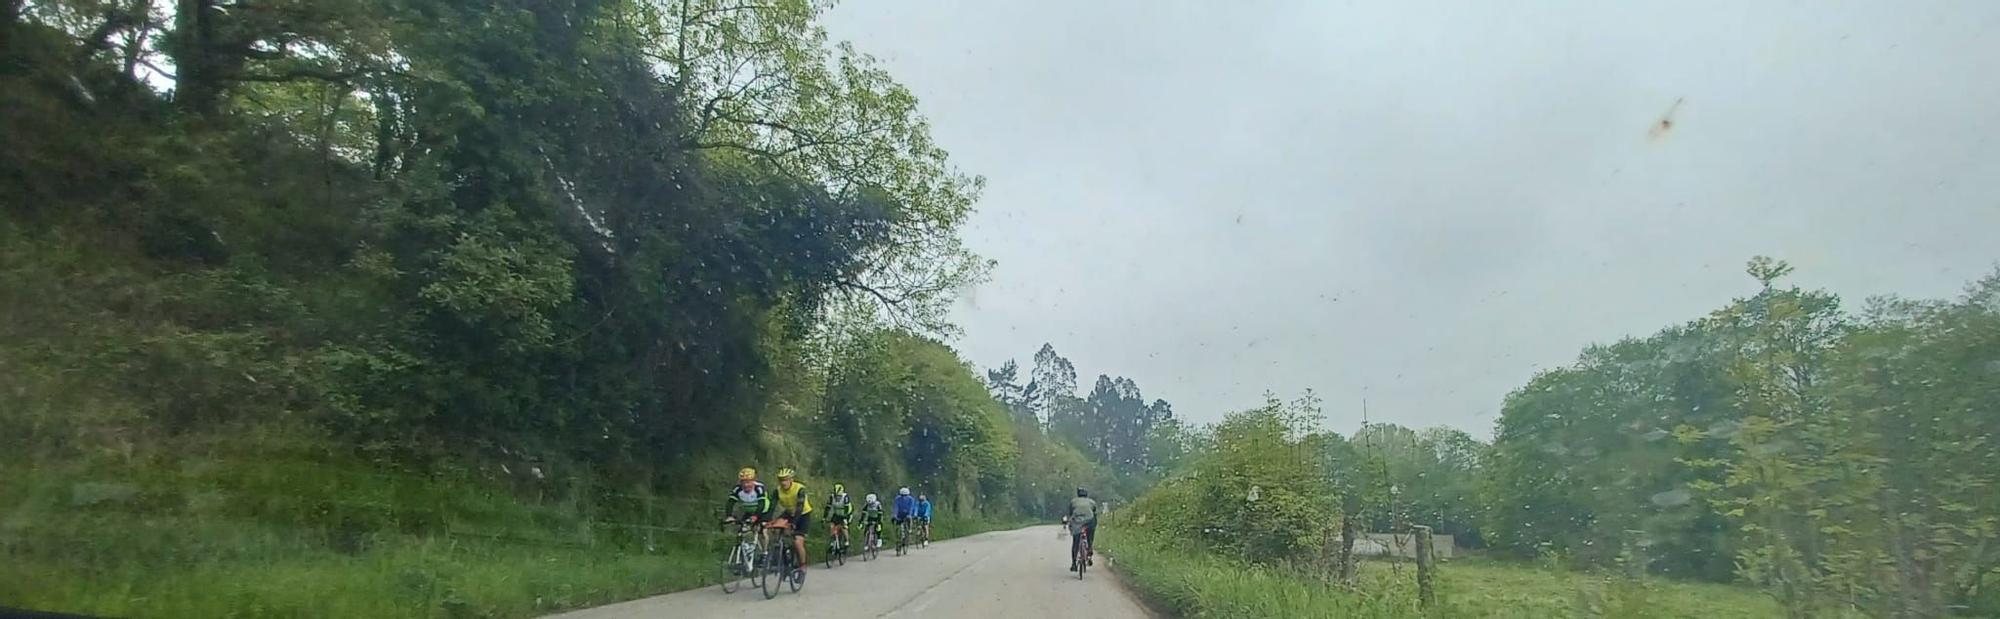 La "otra Vuelta" recorre Siero: lleno total de ciclistas en la carretera Carbonera a su paso por el municipio